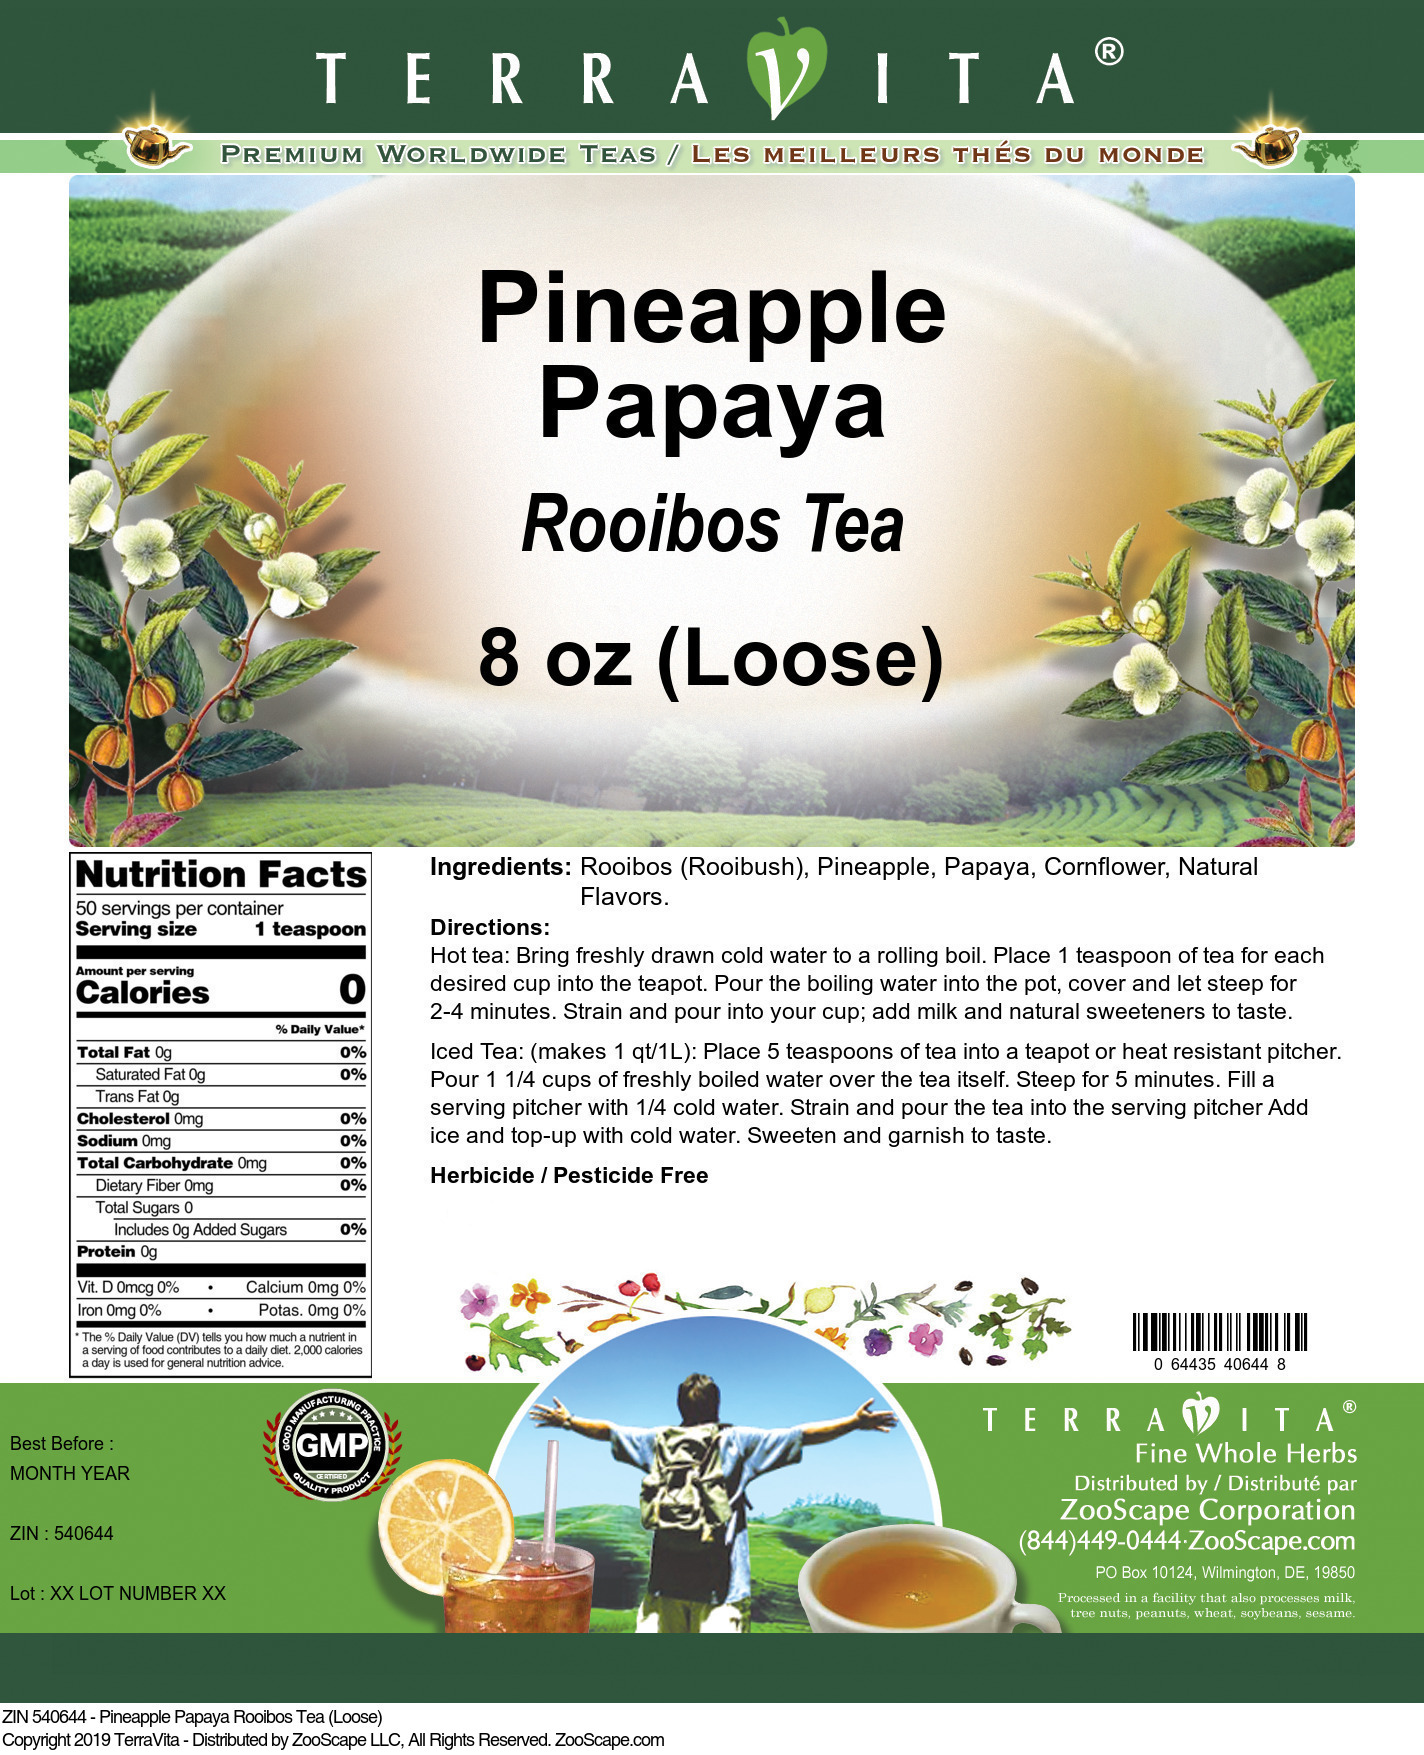 Pineapple Papaya Rooibos Tea (Loose) - Label